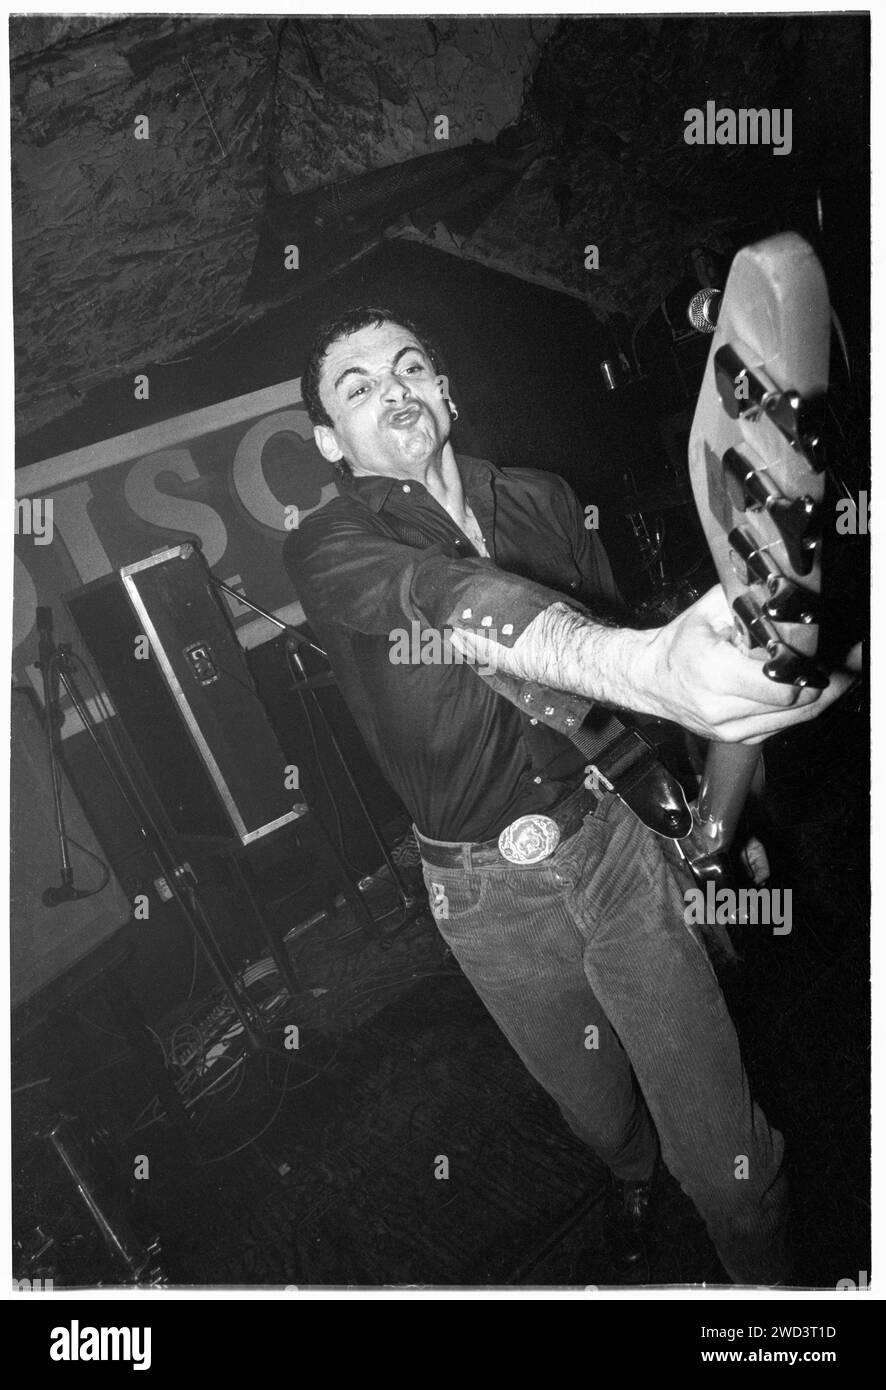 Salvatore Alessi (accreditato come Salv) della band punk S*M*A*S*H (SMASH) suonando dal vivo ai leggendari TJ di Newport, Galles, Regno Unito il 21 marzo 1994. Foto: Rob Watkins. INFO: SMASH, una band punk britannica degli anni '90, ha abbracciato l'etica del fai da te. Il loro suono energetico, alimentato da testi politicamente carichi, trovò un seguito. Inni come "i Want to Kill Somebody" e "Shame" hanno catturato lo spirito ribelle della scena punk durante i loro anni di attività. Foto Stock